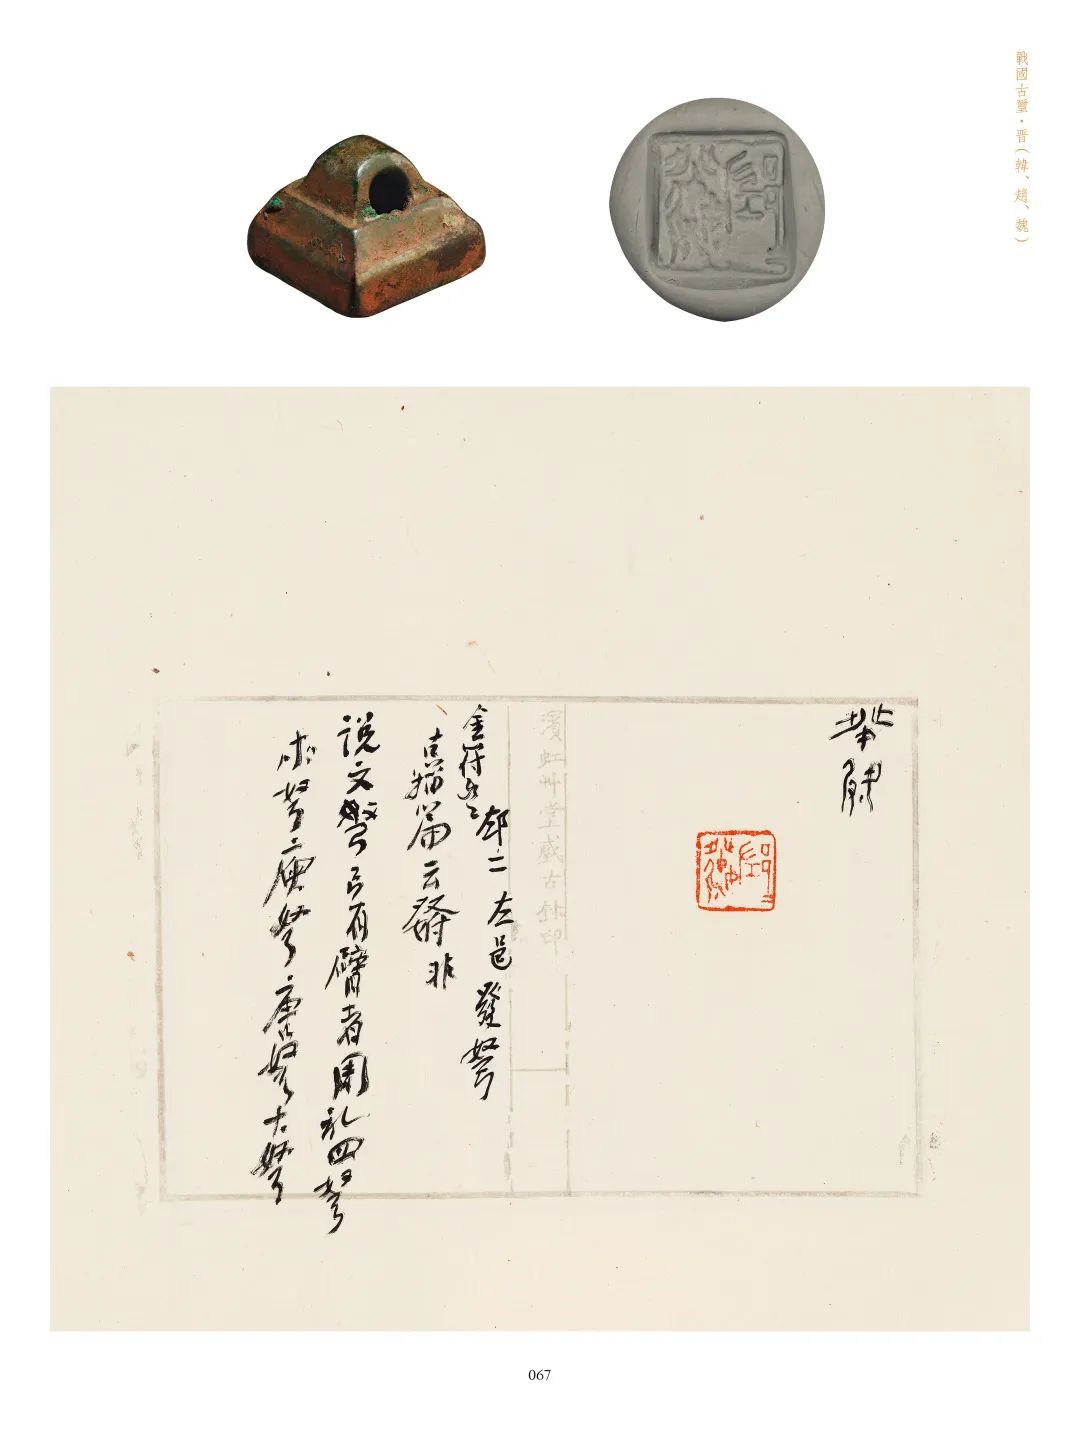 国内最具学术与艺术价值的玺印收藏集合体之一《古物影——黄宾虹古玺印收藏集萃》(图151)